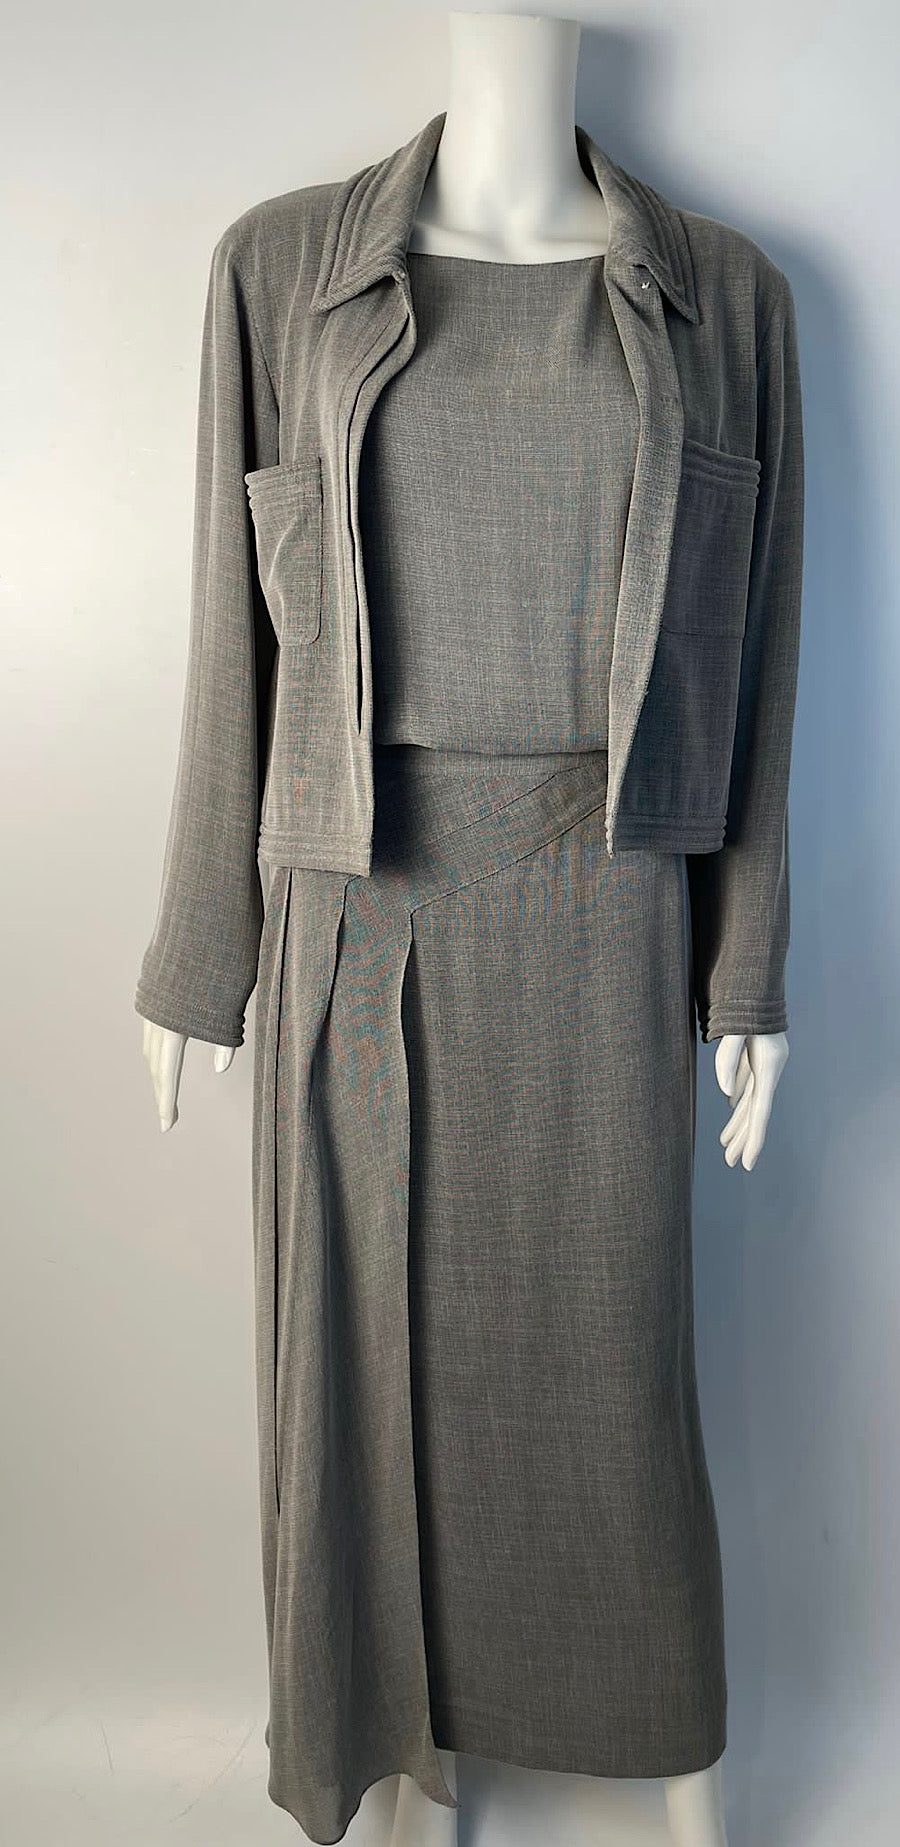 HelensChanel Vintage Chanel 99p 1999 Spring Grey 3 Piece Skirt Blouse Jacket Dress Outfit Set FR 36